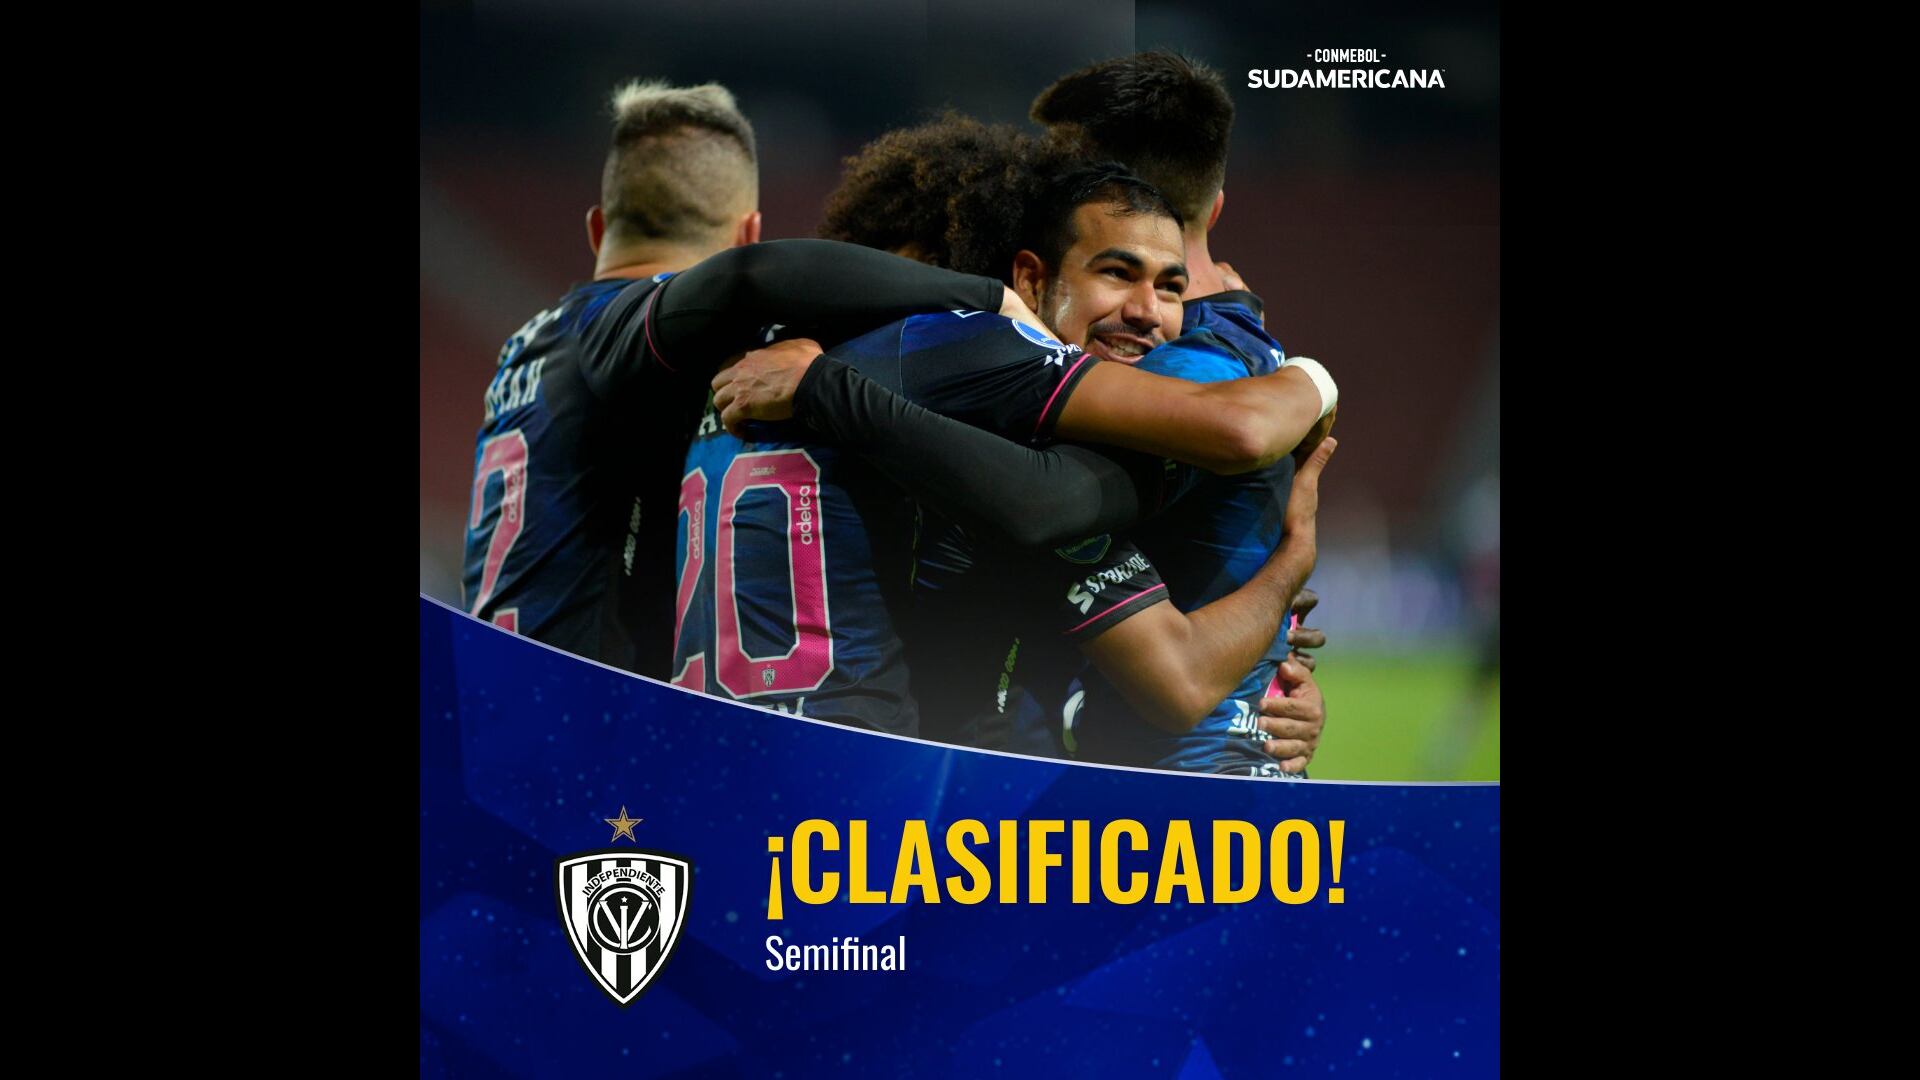 Independiente del Valle se convirtió en el segundo equipo semifinalista de la Sudamericana. (Conmebol Sudamericana)